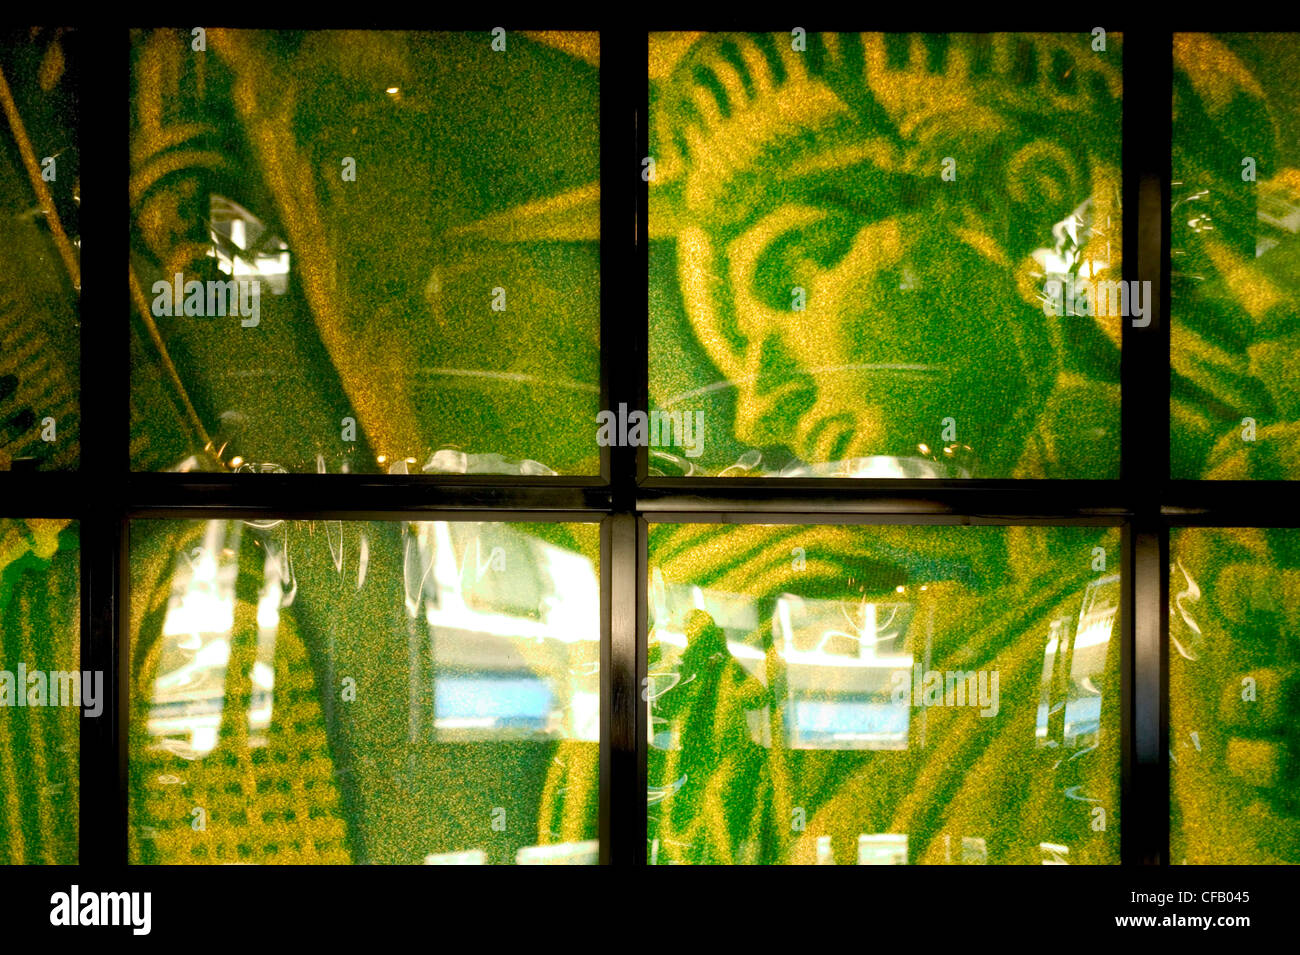 L'image de la Statue de la liberté d'un certain nombre d'écrans de télévision New York City store. Banque D'Images